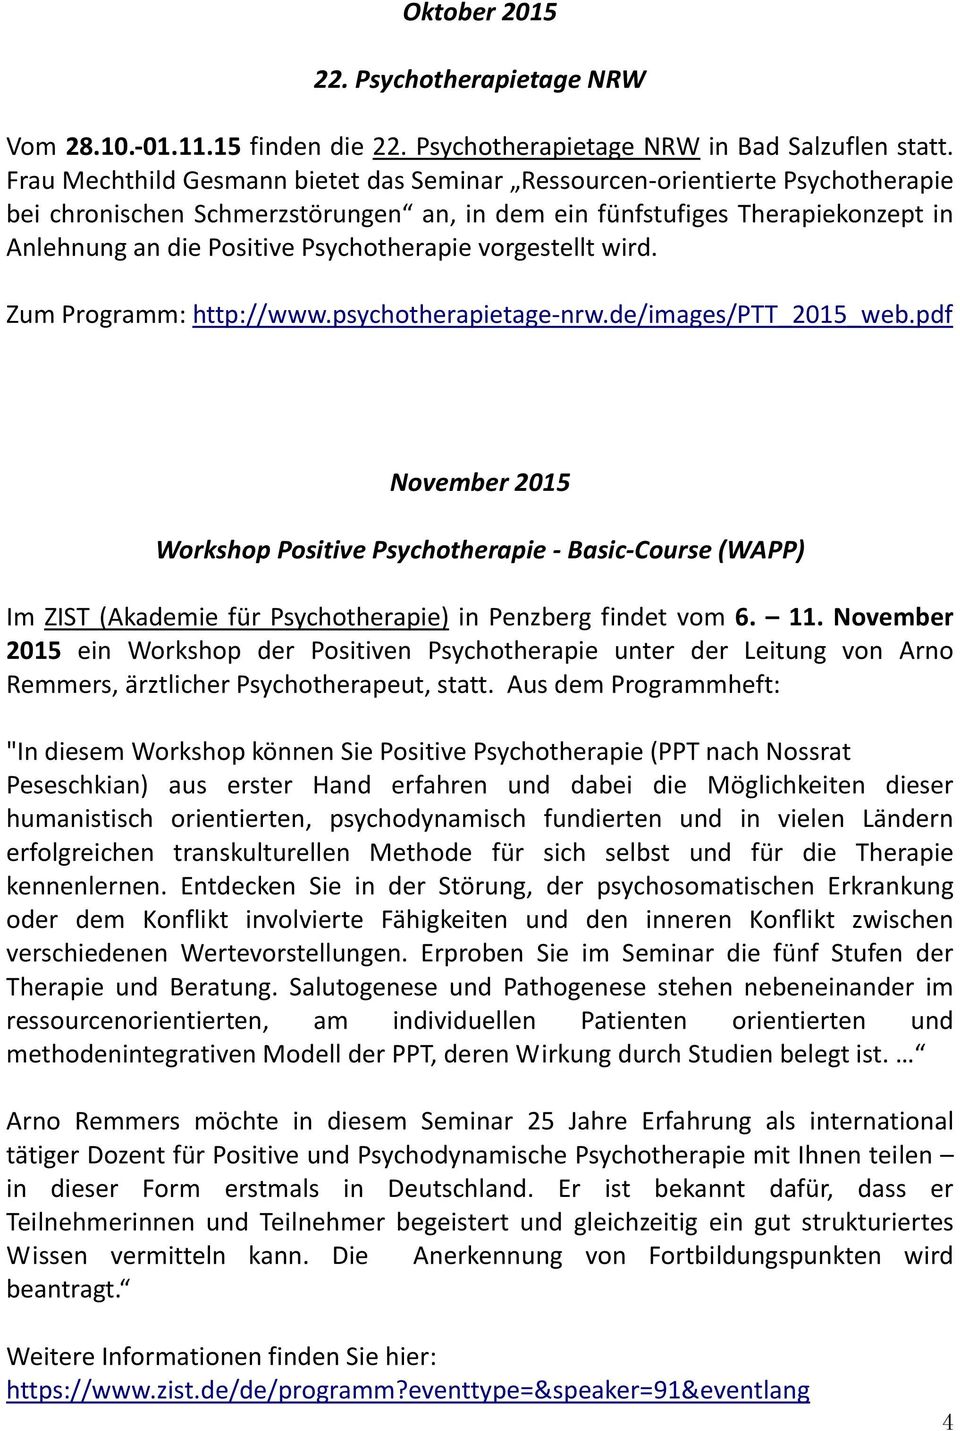 Psychotherapie vorgestellt wird. Zum Programm: http://www.psychotherapietage-nrw.de/images/ptt_2015_web.